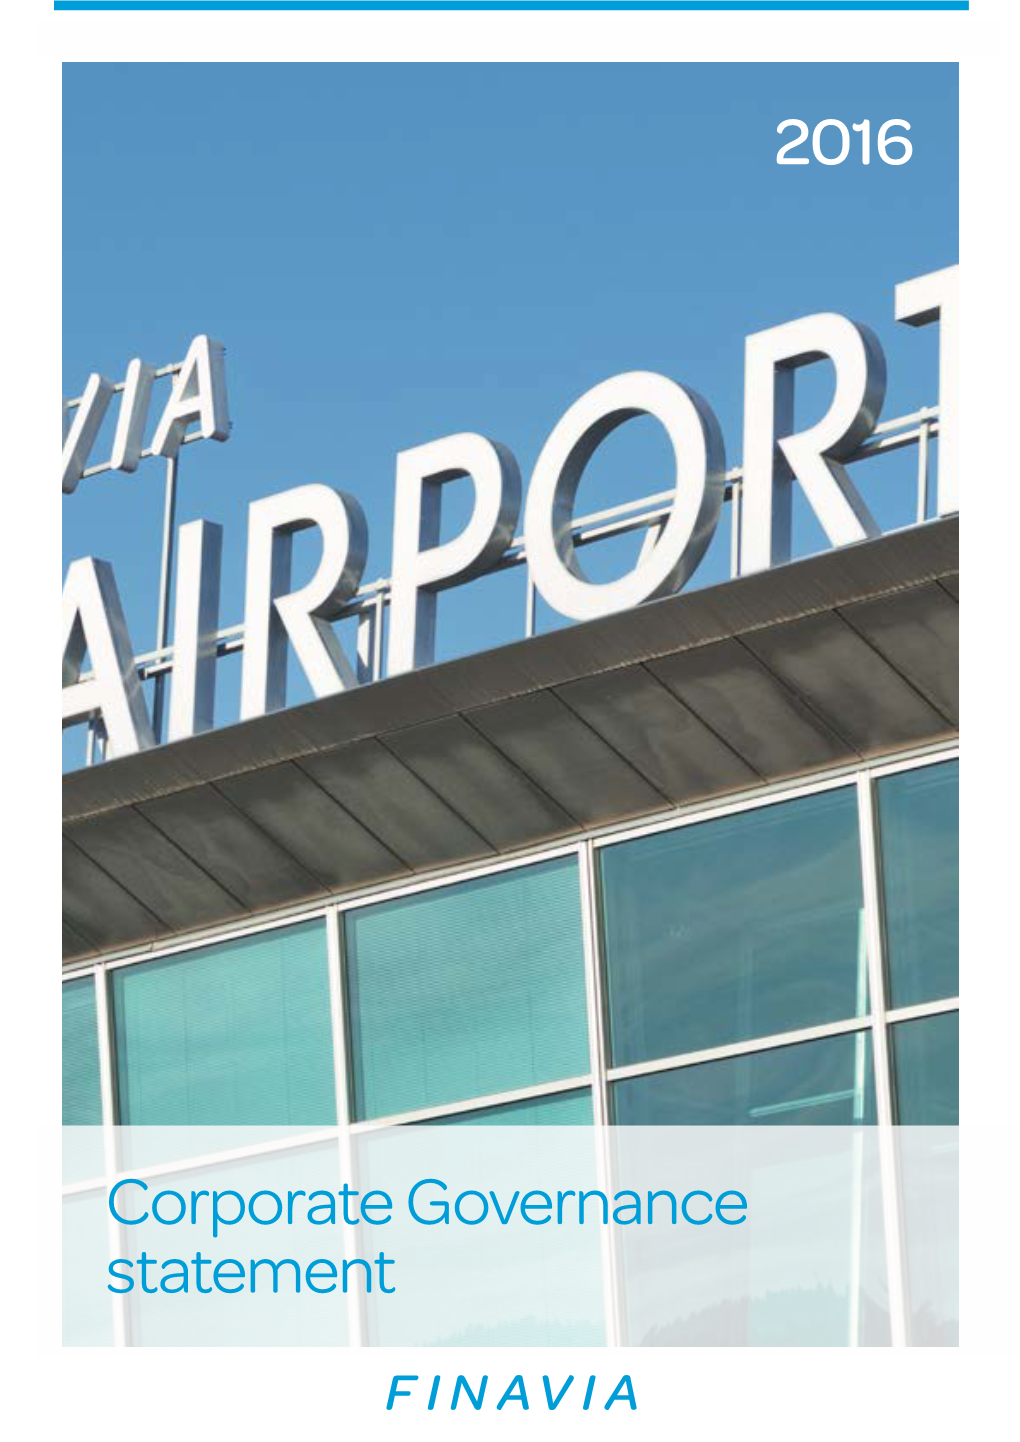 Finavia Corporate Governance Statement 2016